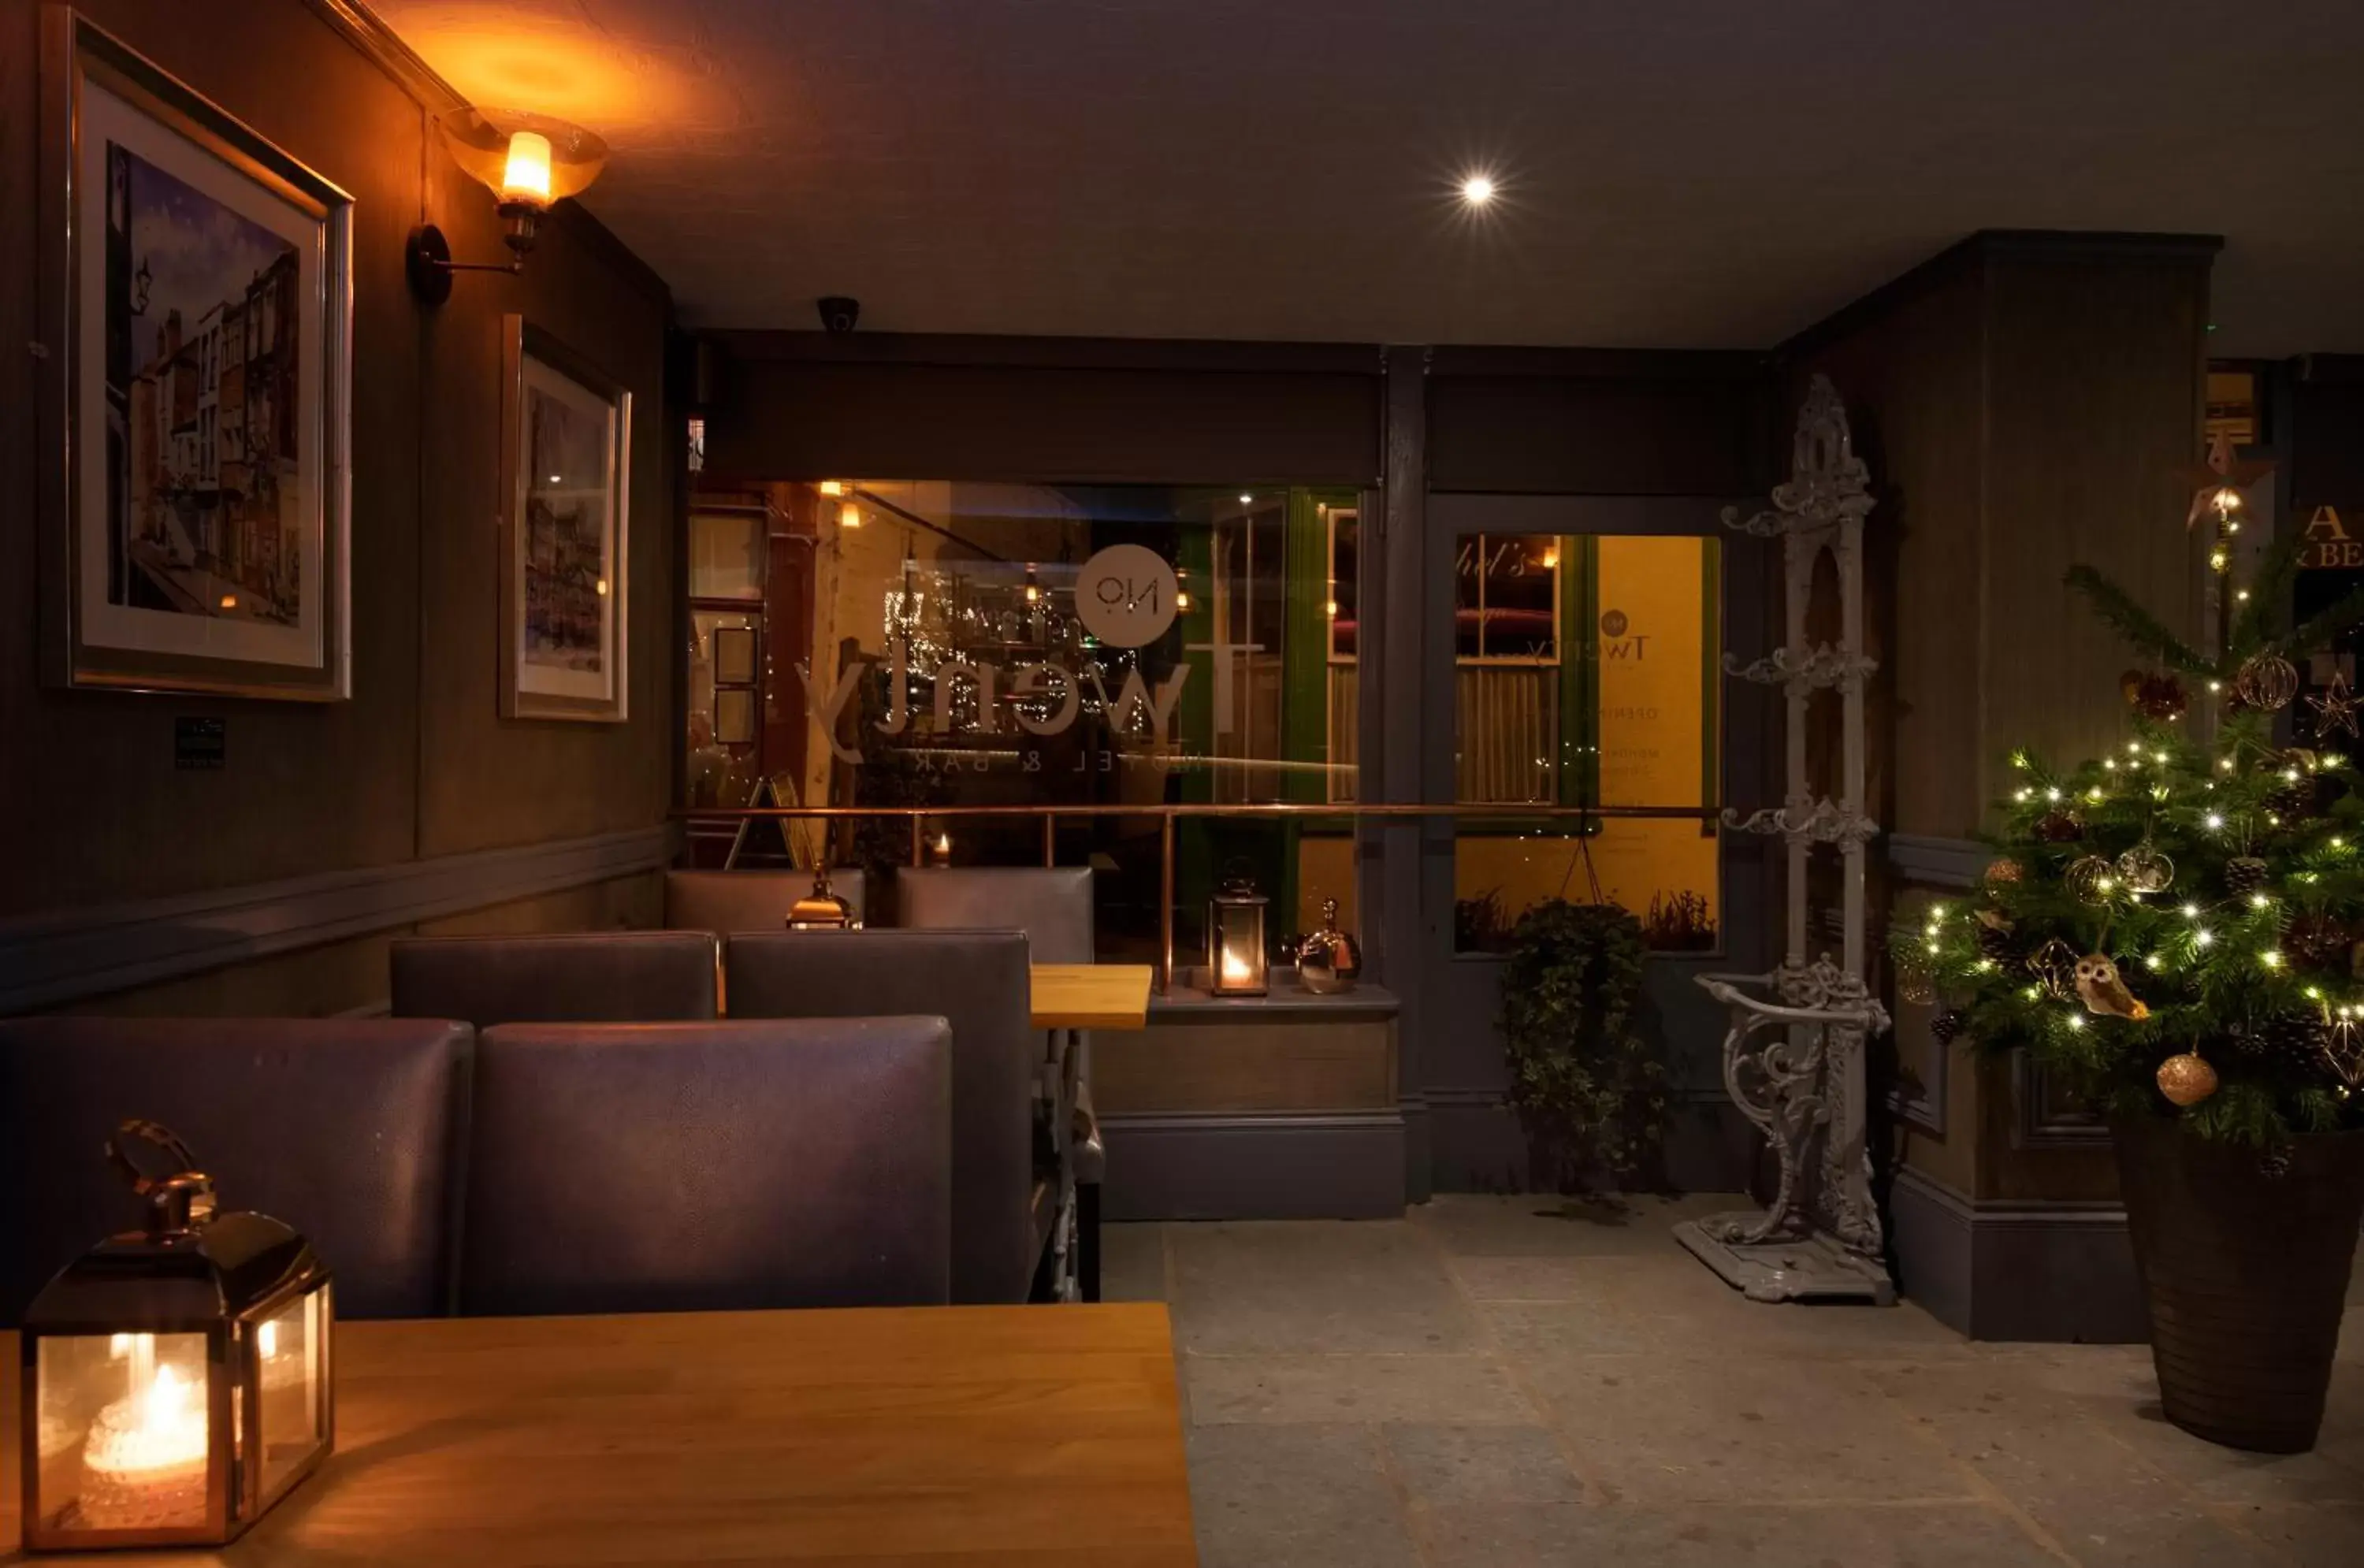 Lounge or bar, Lobby/Reception in Twenty Hotel and Bar